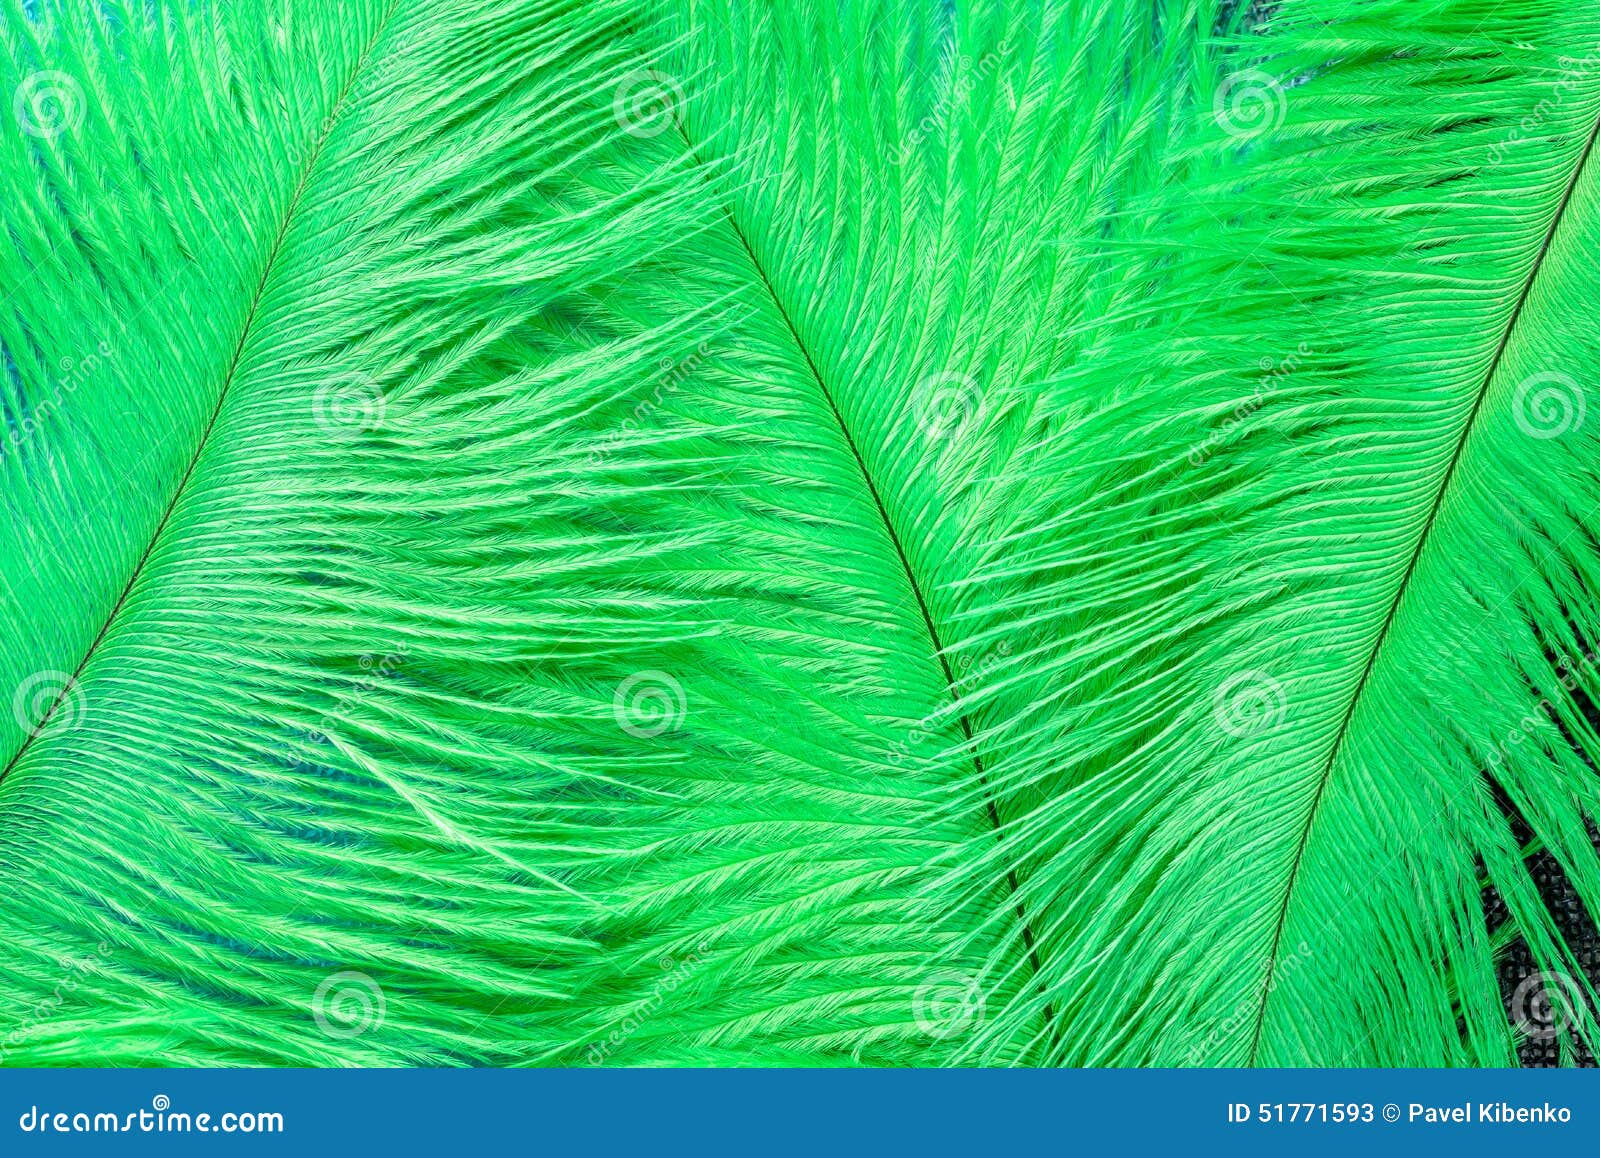 orquesta difícil diente Plumas verdes imagen de archivo. Imagen de primer, avestruz - 51771593